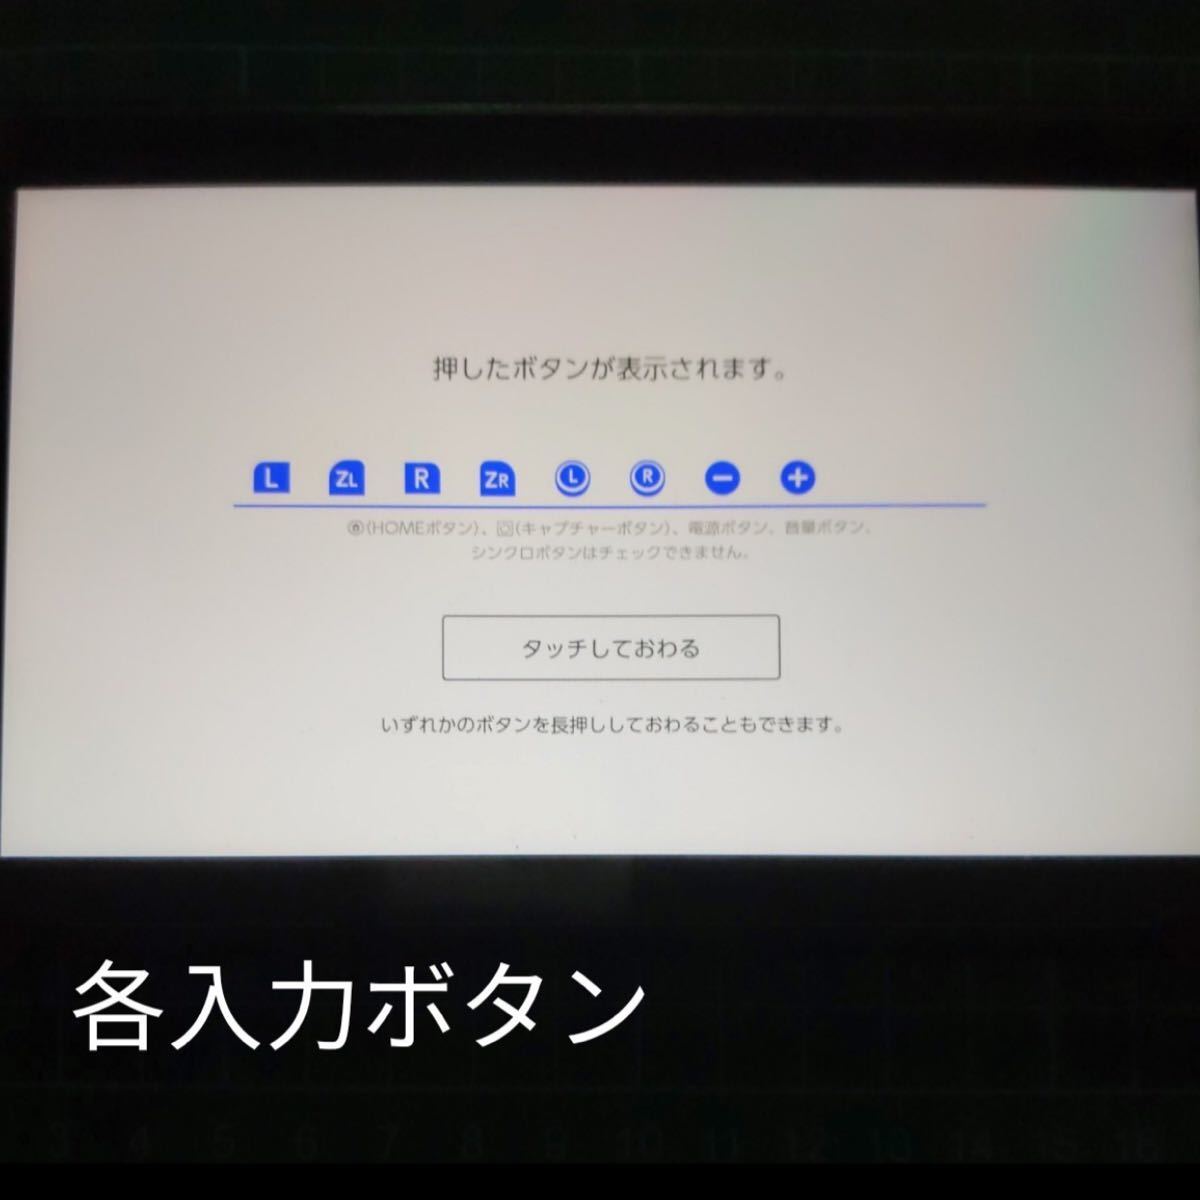 スプラトゥーン2 Nintendo Switch Proコントローラー